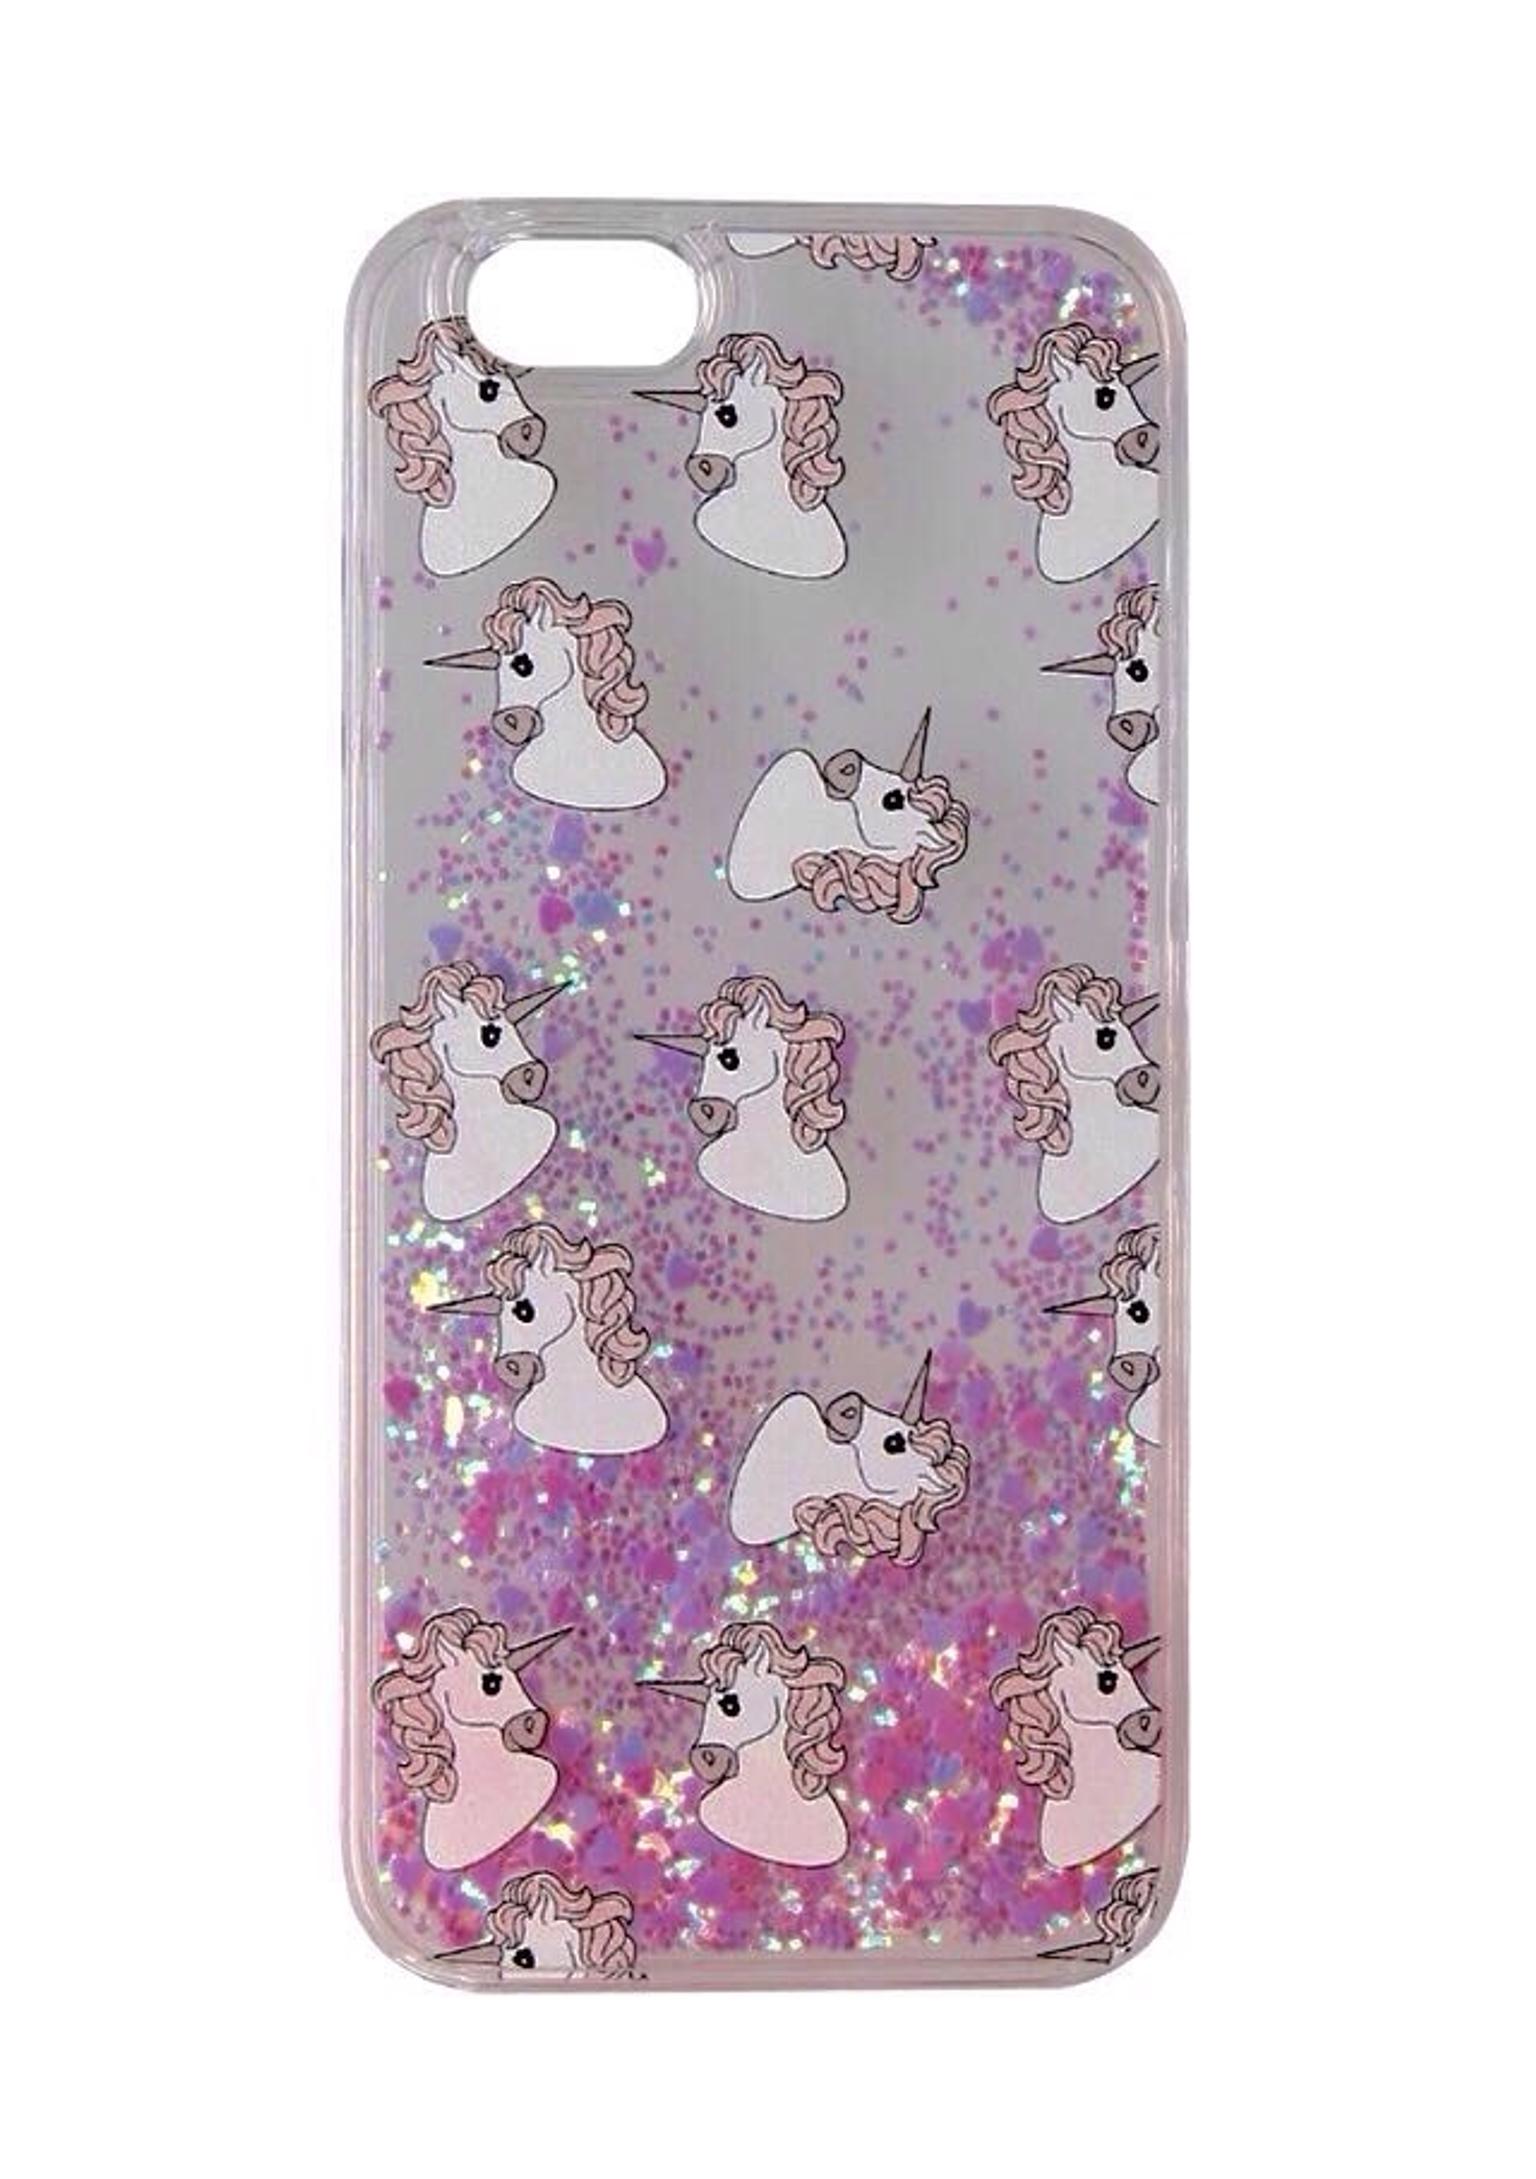 cover iphone 5s con unicorno